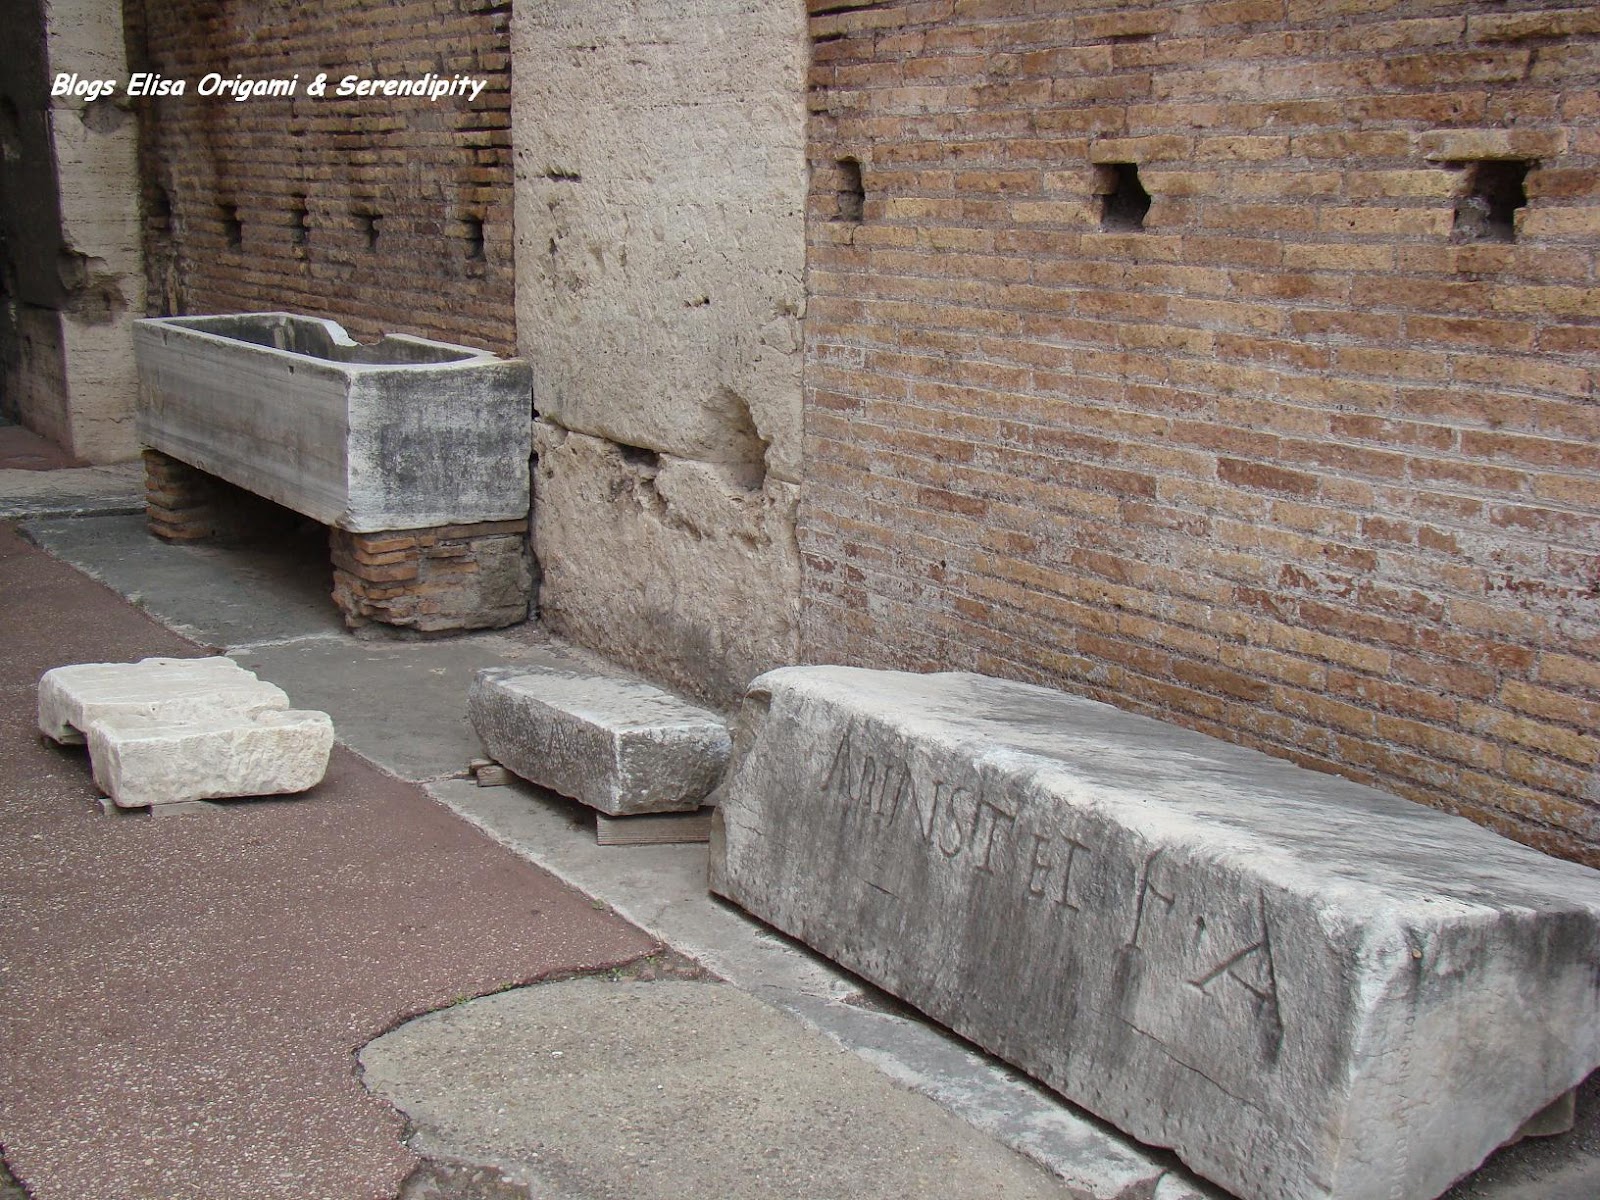 Visita al interior del Coliseo, Roma, Elisa N, Blog de Viajes, Lifestyle, Travel